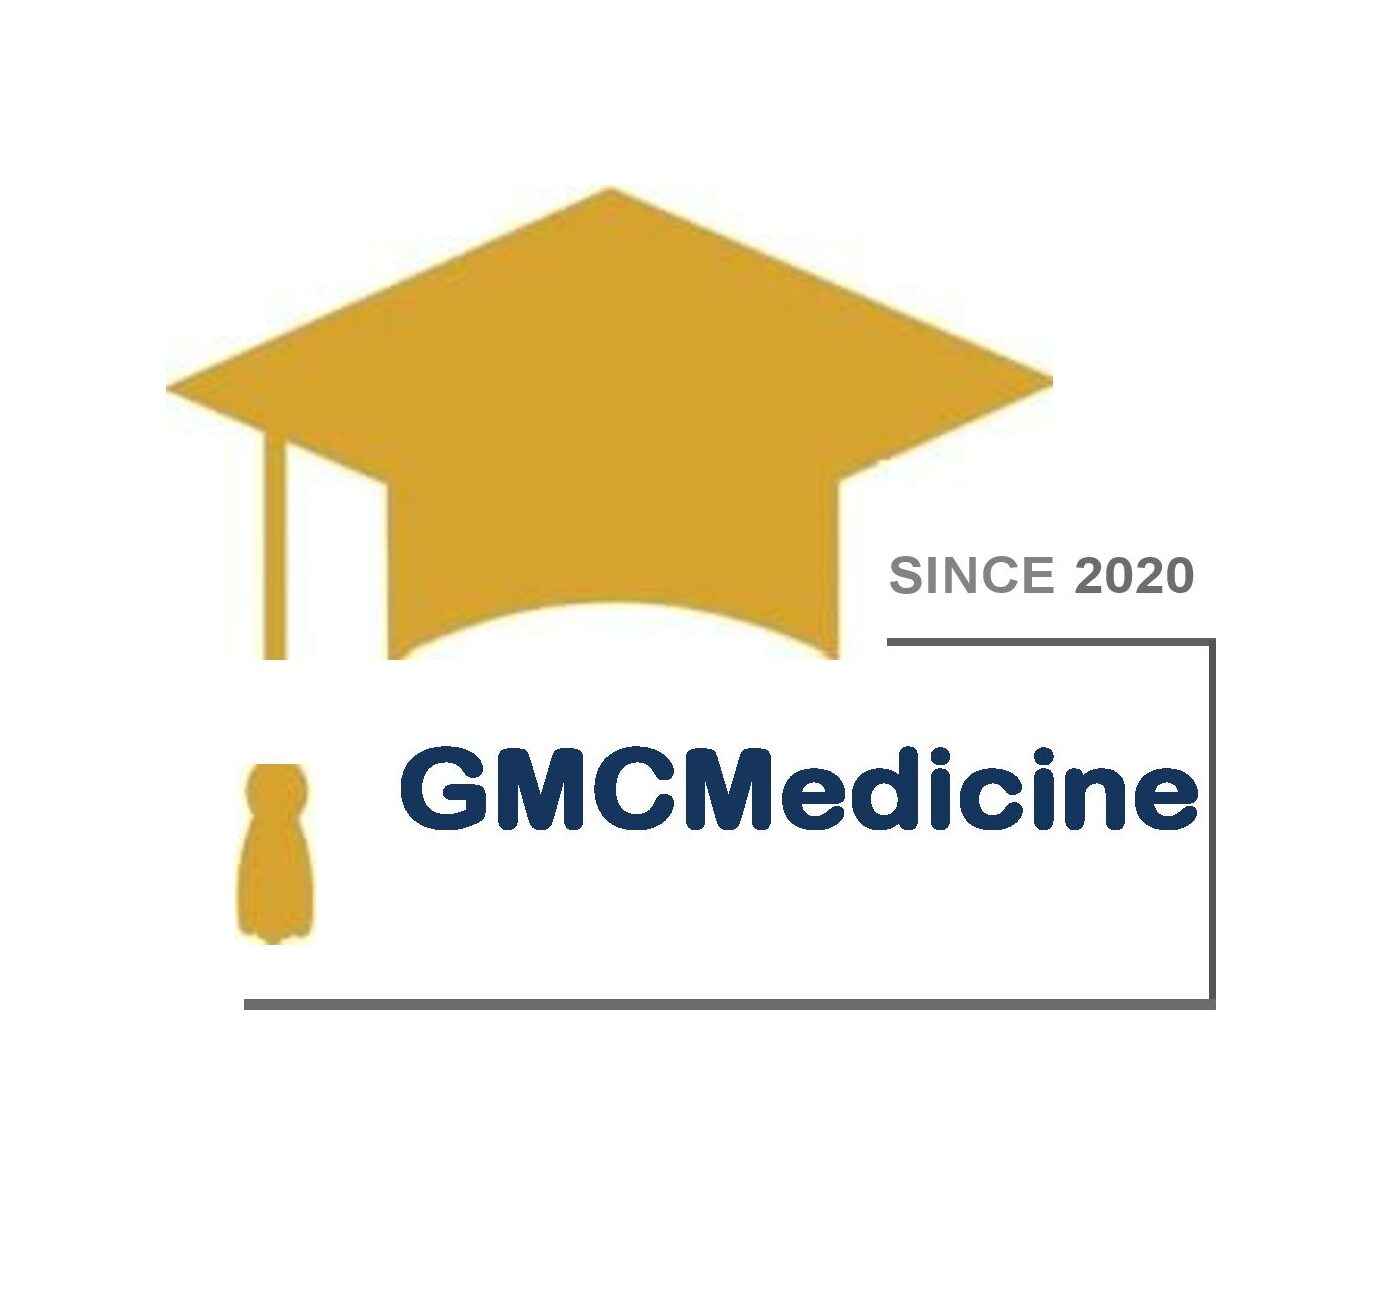 GMCMedicine